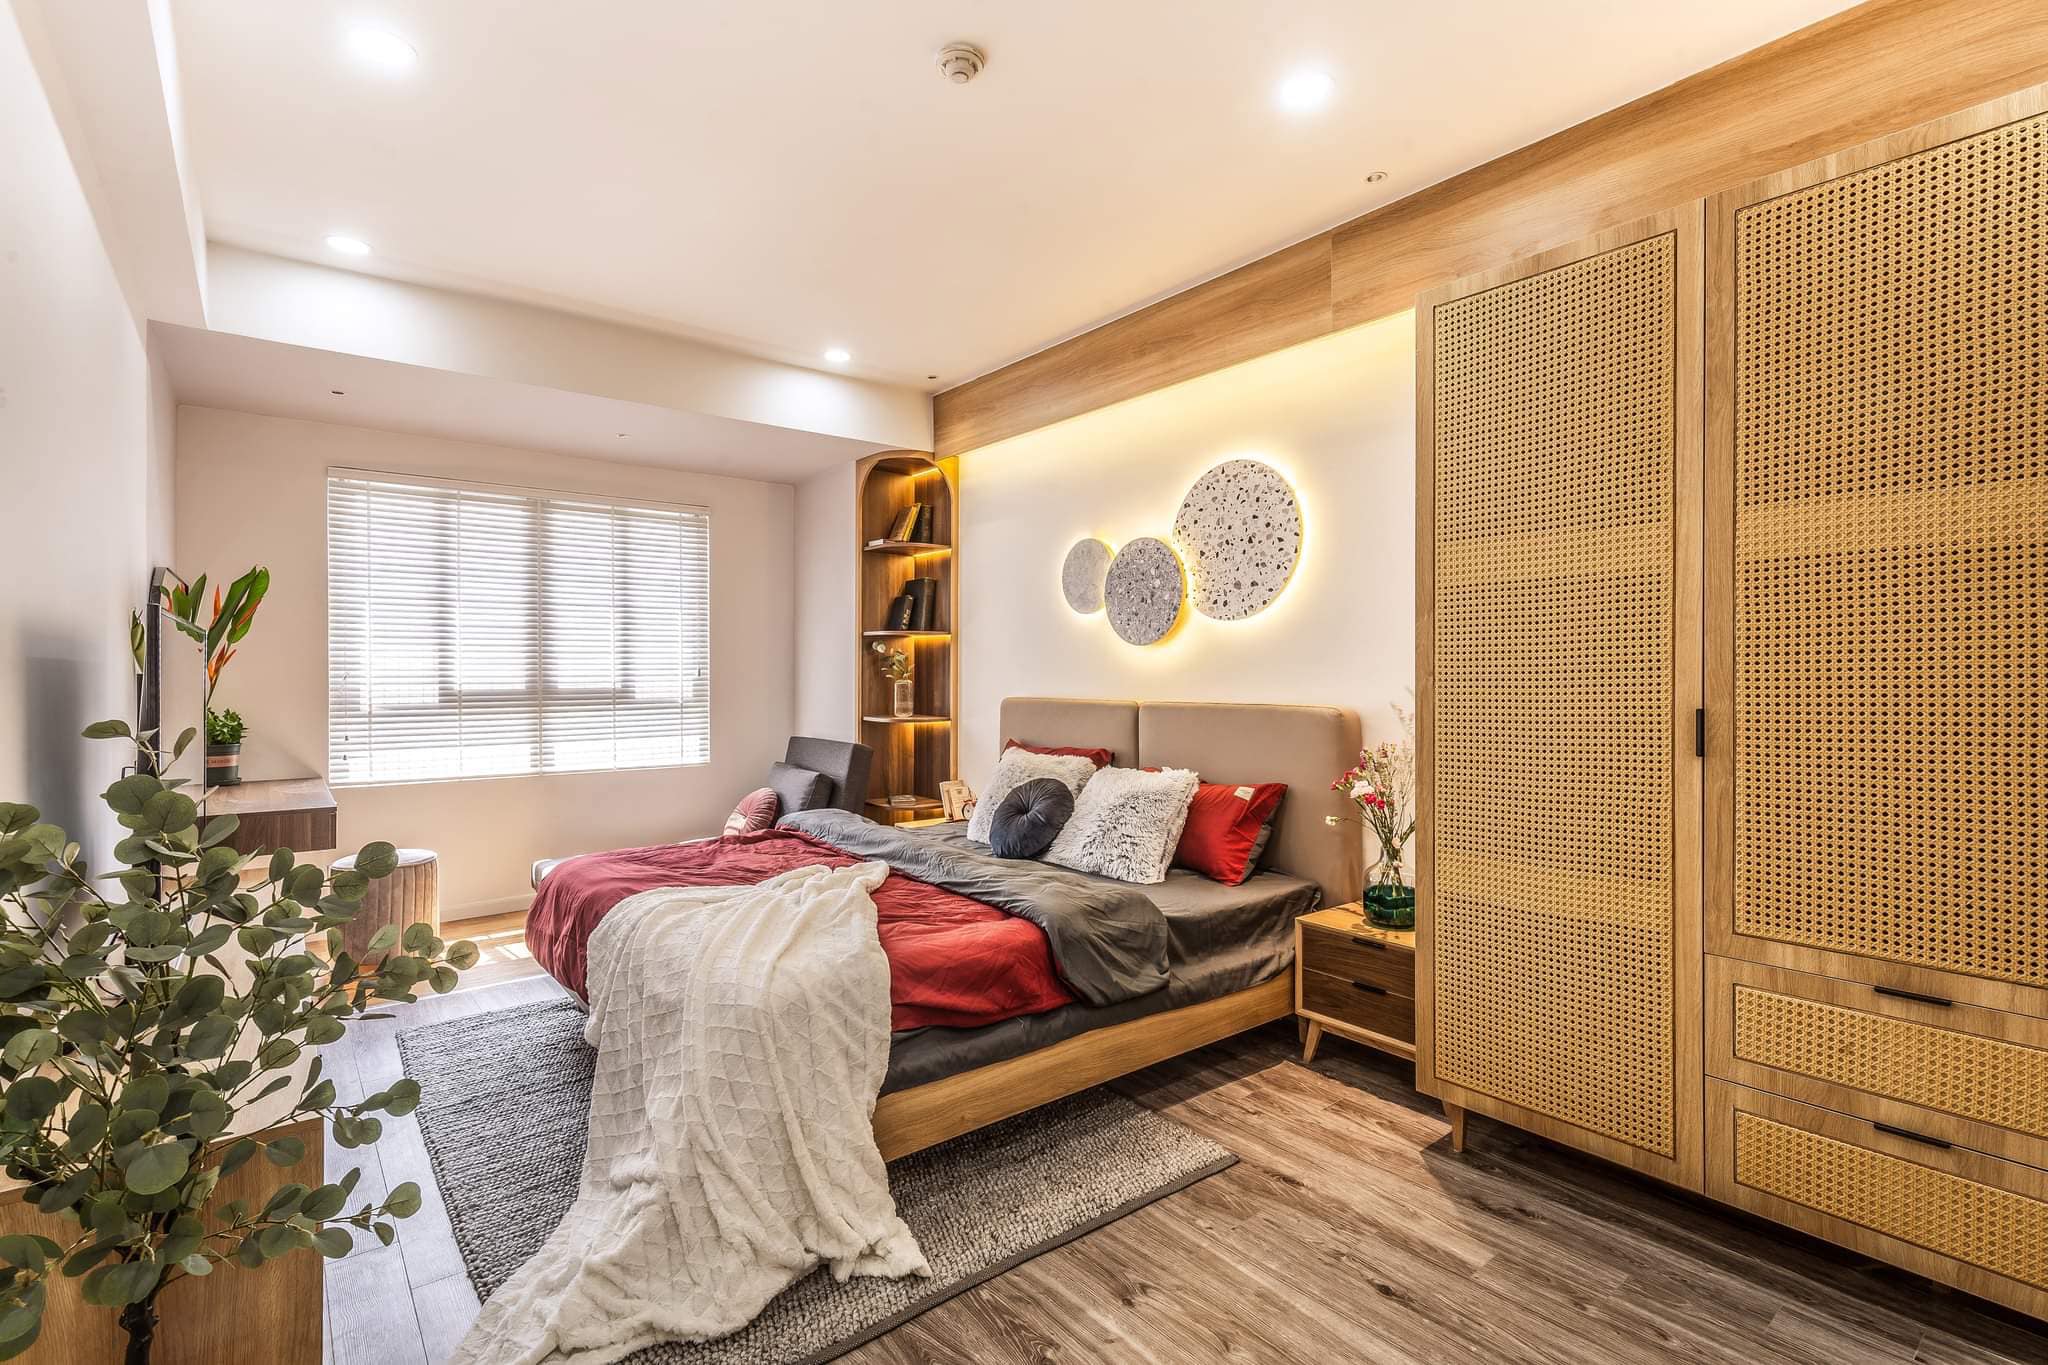 Nội thất phòng ngủ được làm bằng gỗ tự nhiên mang đến cảm giác ấm cúng và hiện đại 